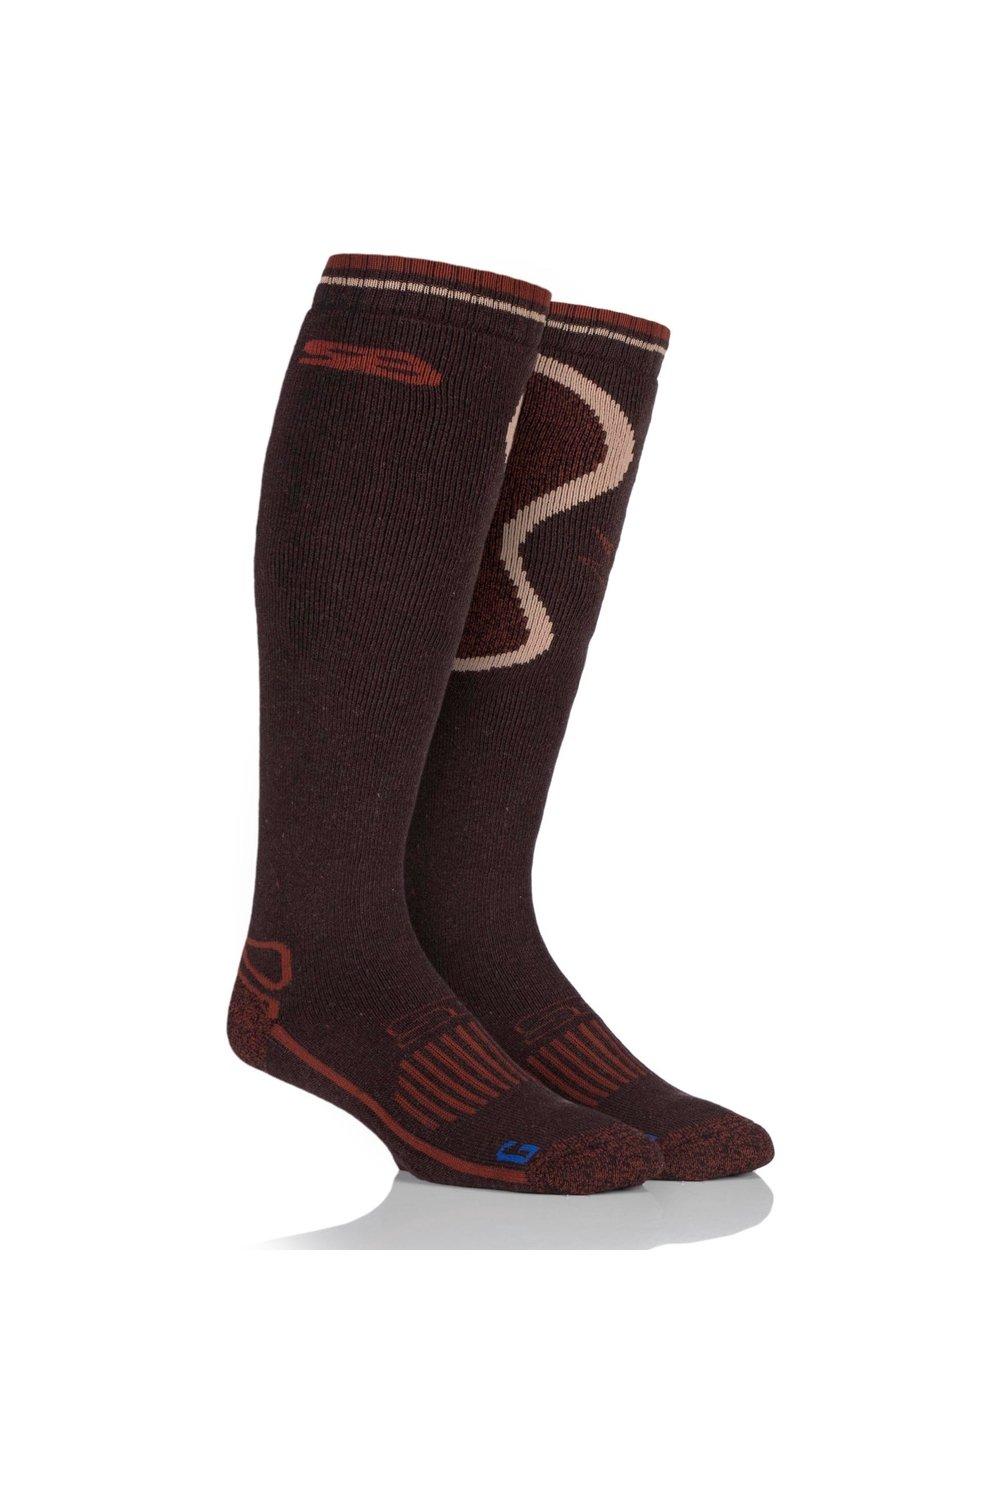 1 пара длинных носков из смесовой шерсти BlueGuard в стиле кантри SOCKSHOP Storm Bloc, коричневый